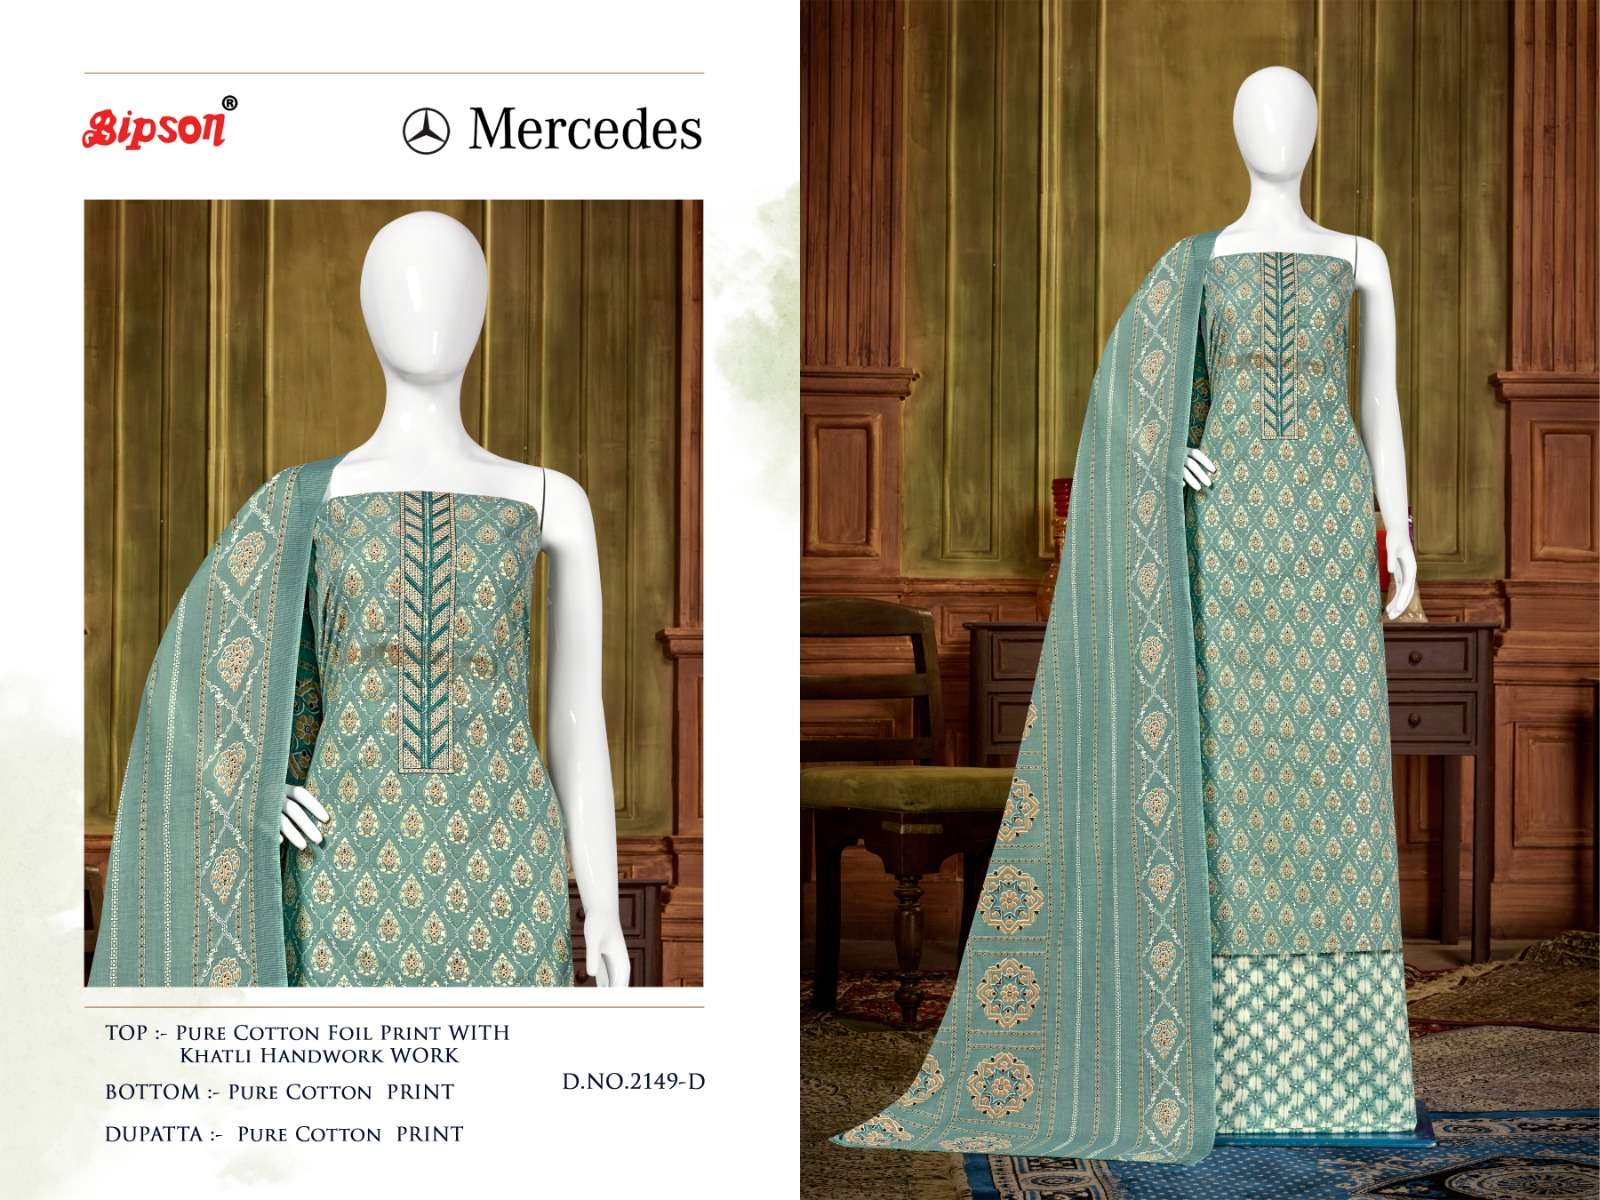 bipson prints mercedes 2149 series unstich designer dress material catalogue wholesale price surat